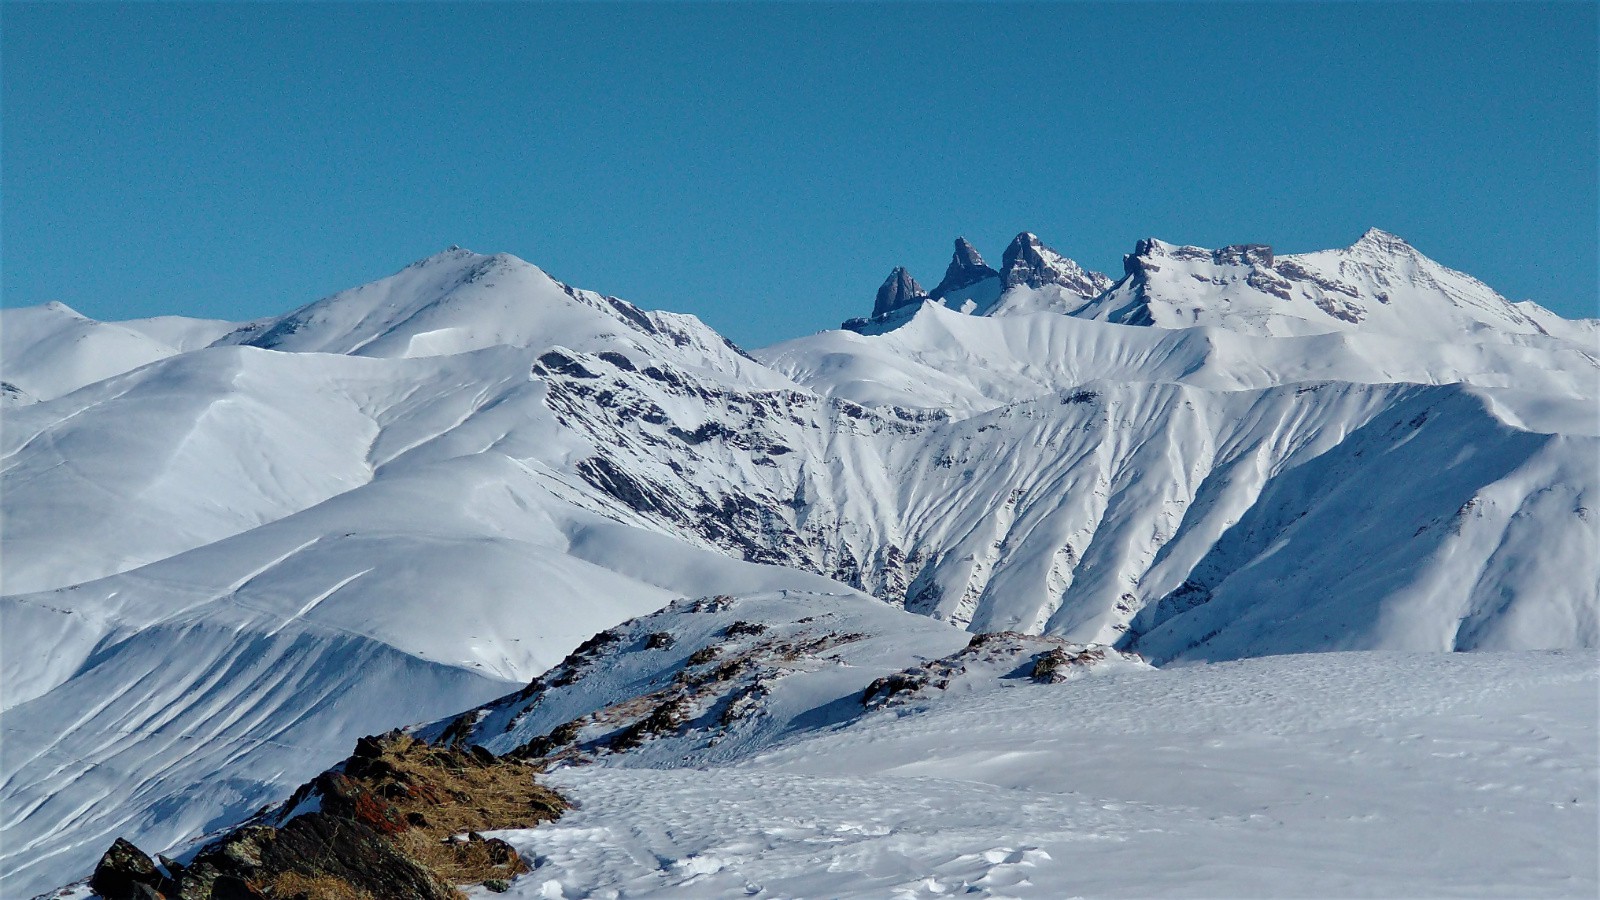 Vue du sommet: Quarlie, Tête du Vallon, Aiguilles d'Arves, Goléon